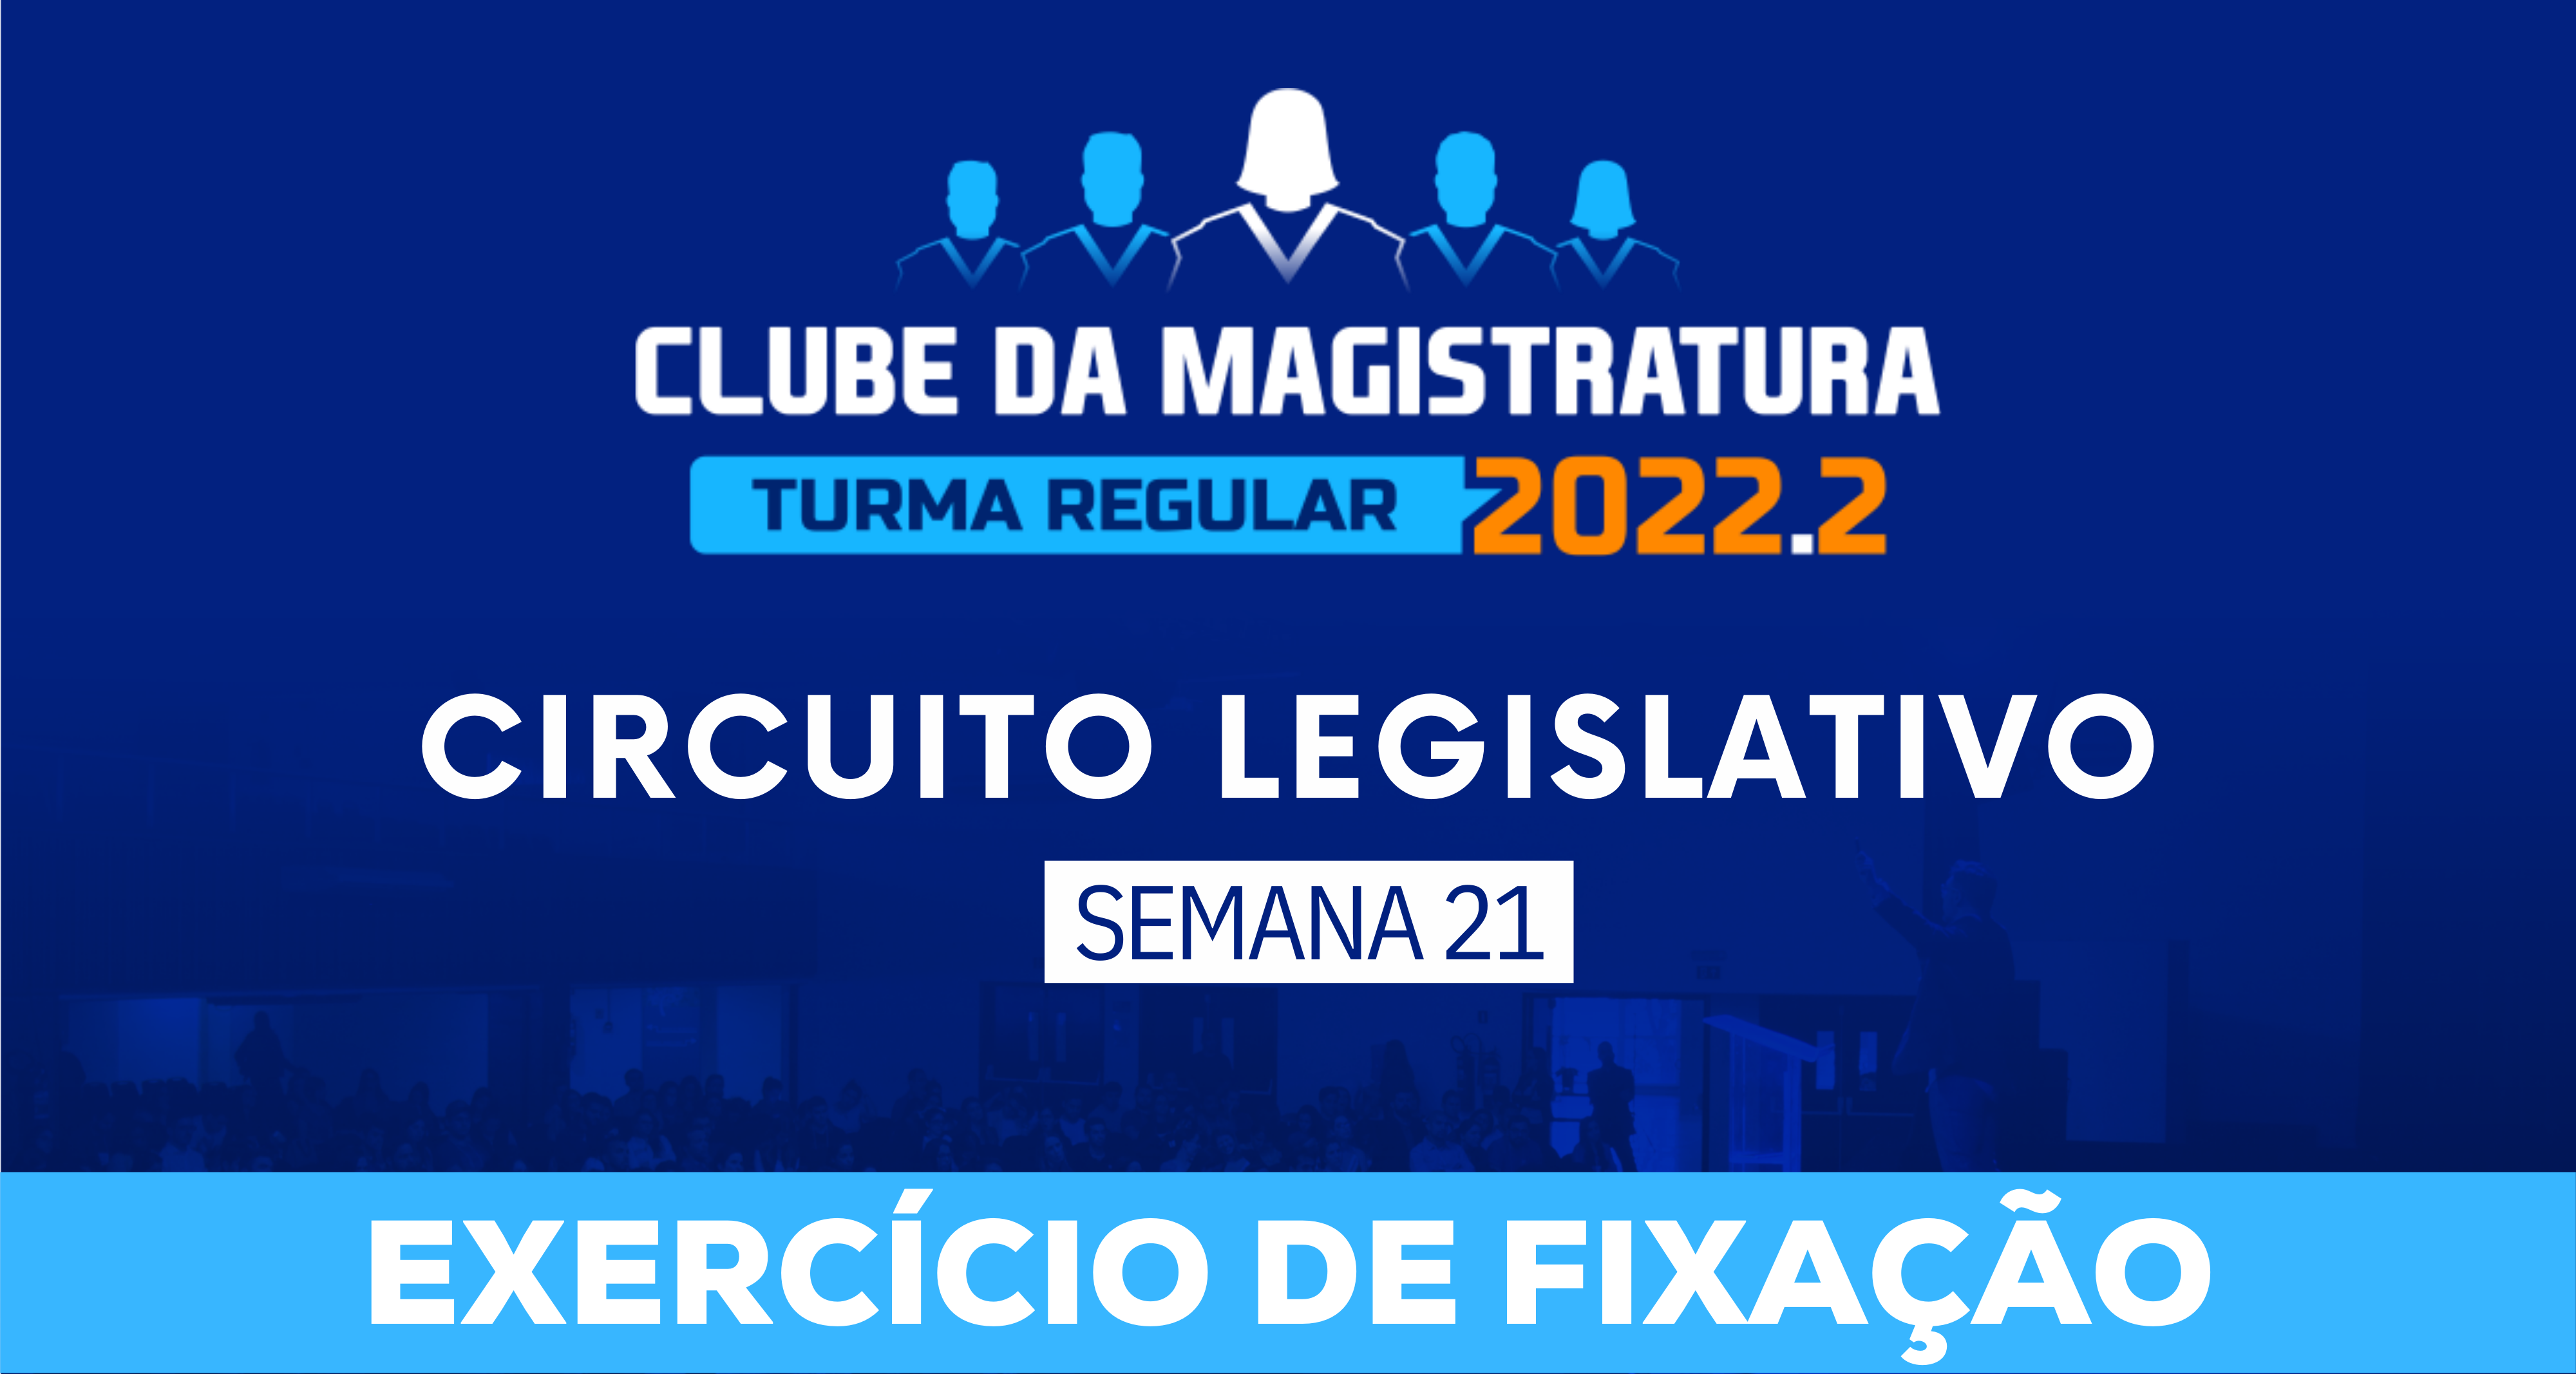 Circuito Legislativo 2022.2 (Clube da Magistratura - Semana 21)